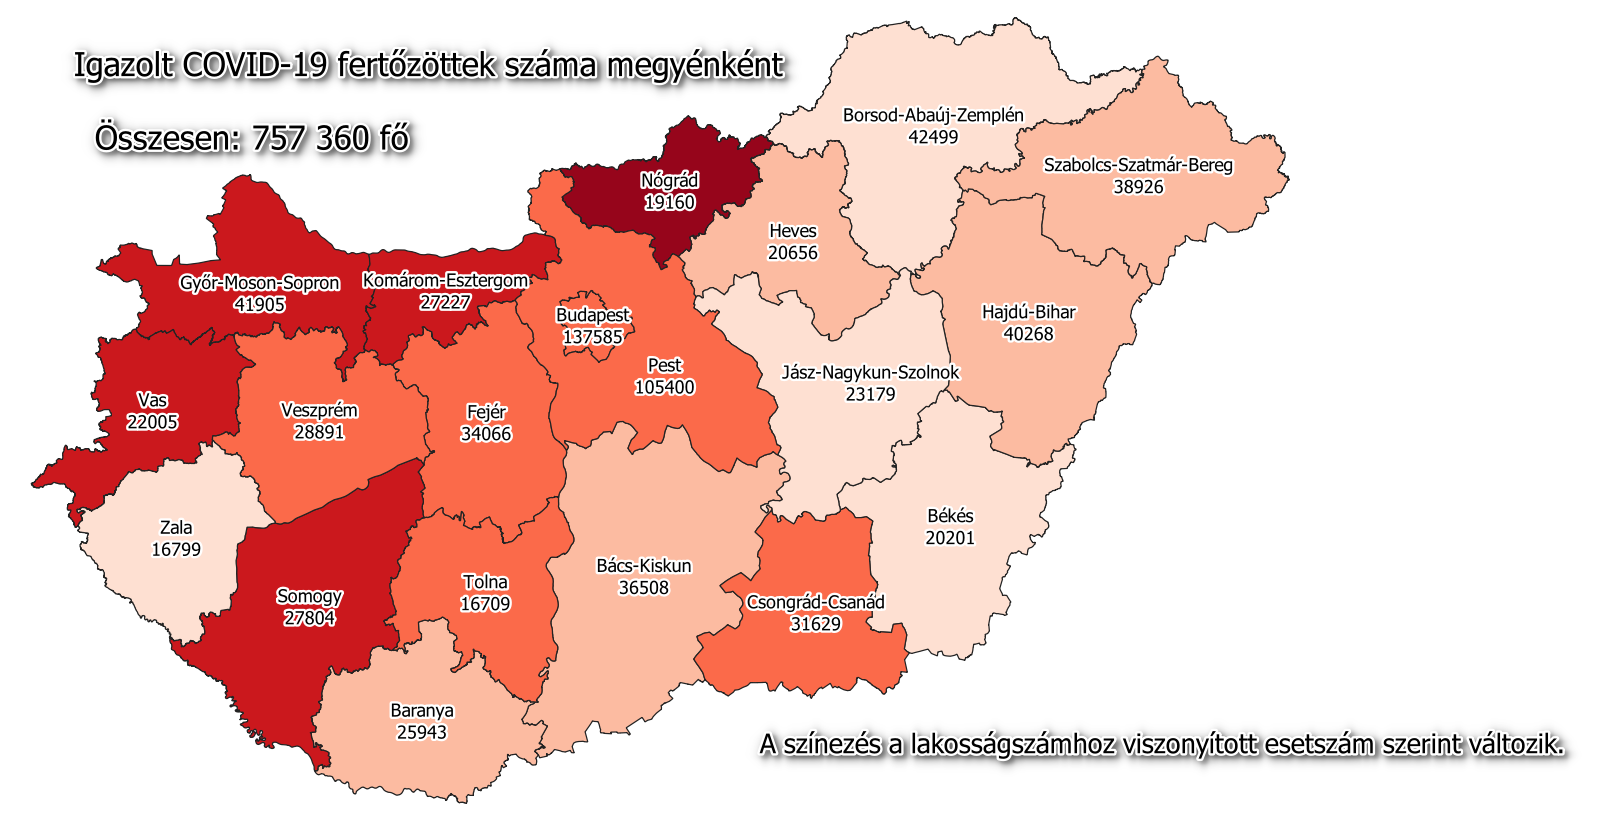 المجر خريطة فيروس كورونا